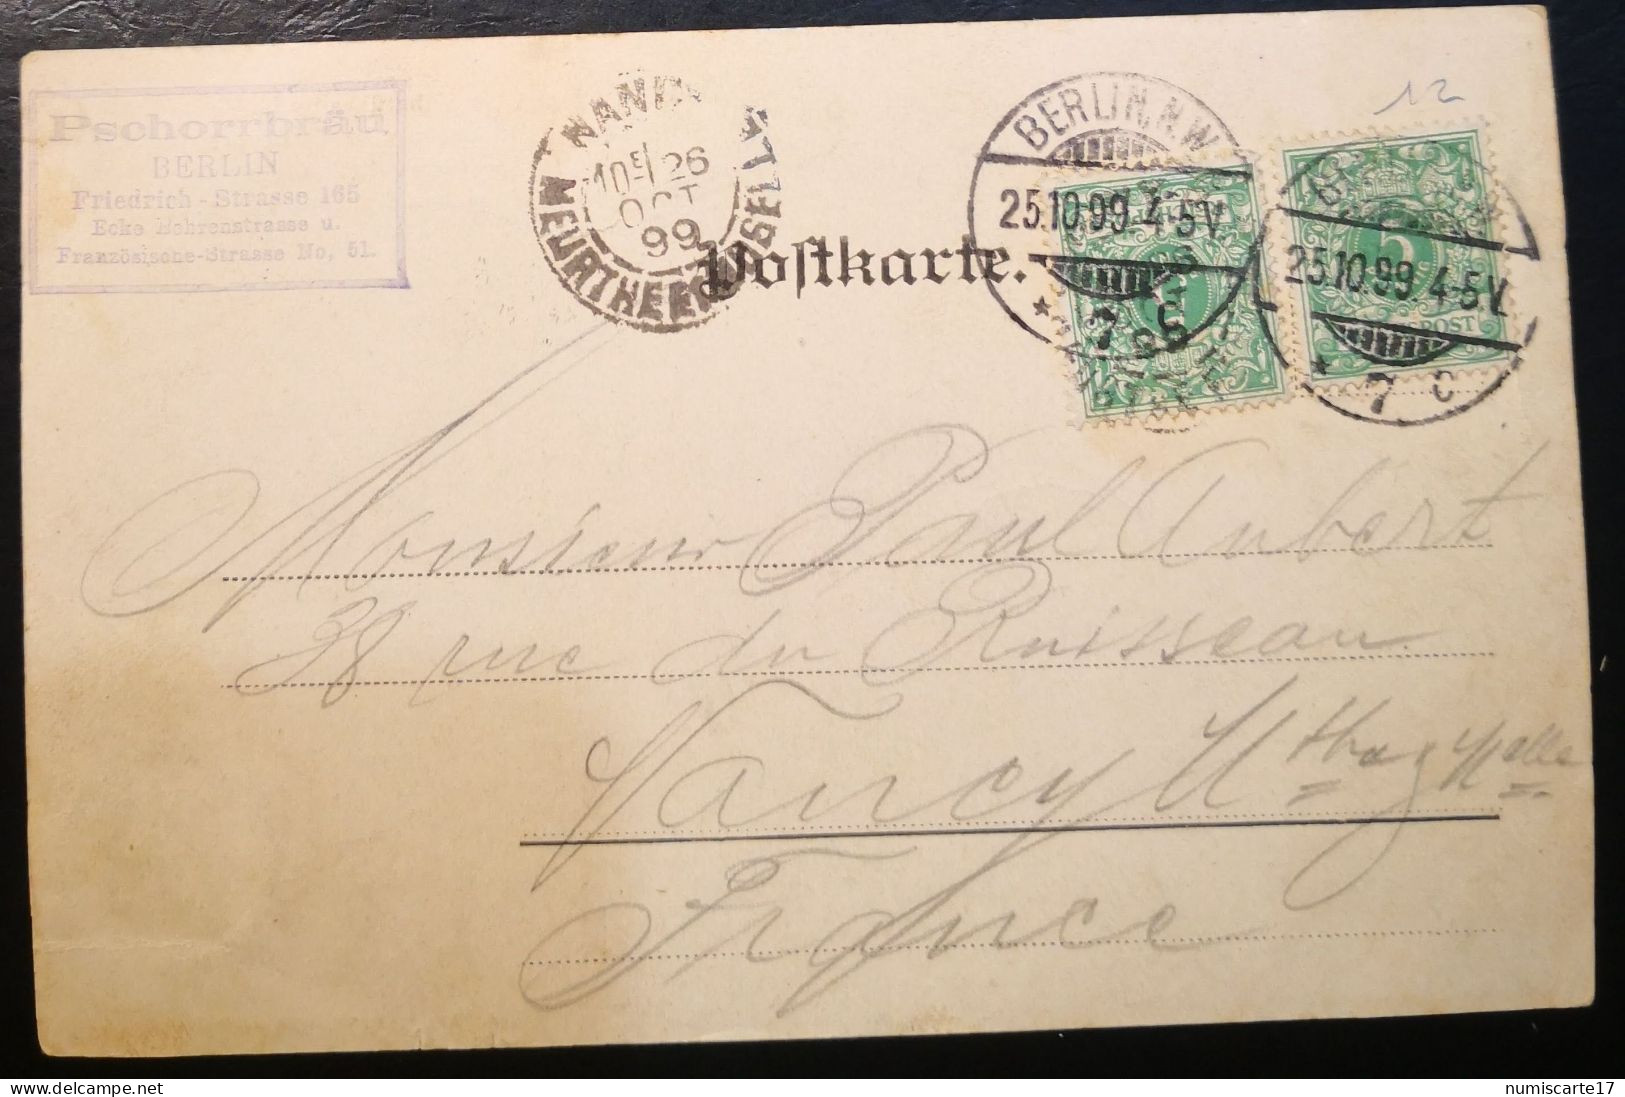 Cpa Gruss Aus ( Berlin ), 1899, Banknoten, Copy 20 Mark Gold " Der Ansichtskarten-Ueberfluss.." - Monnaies (représentations)